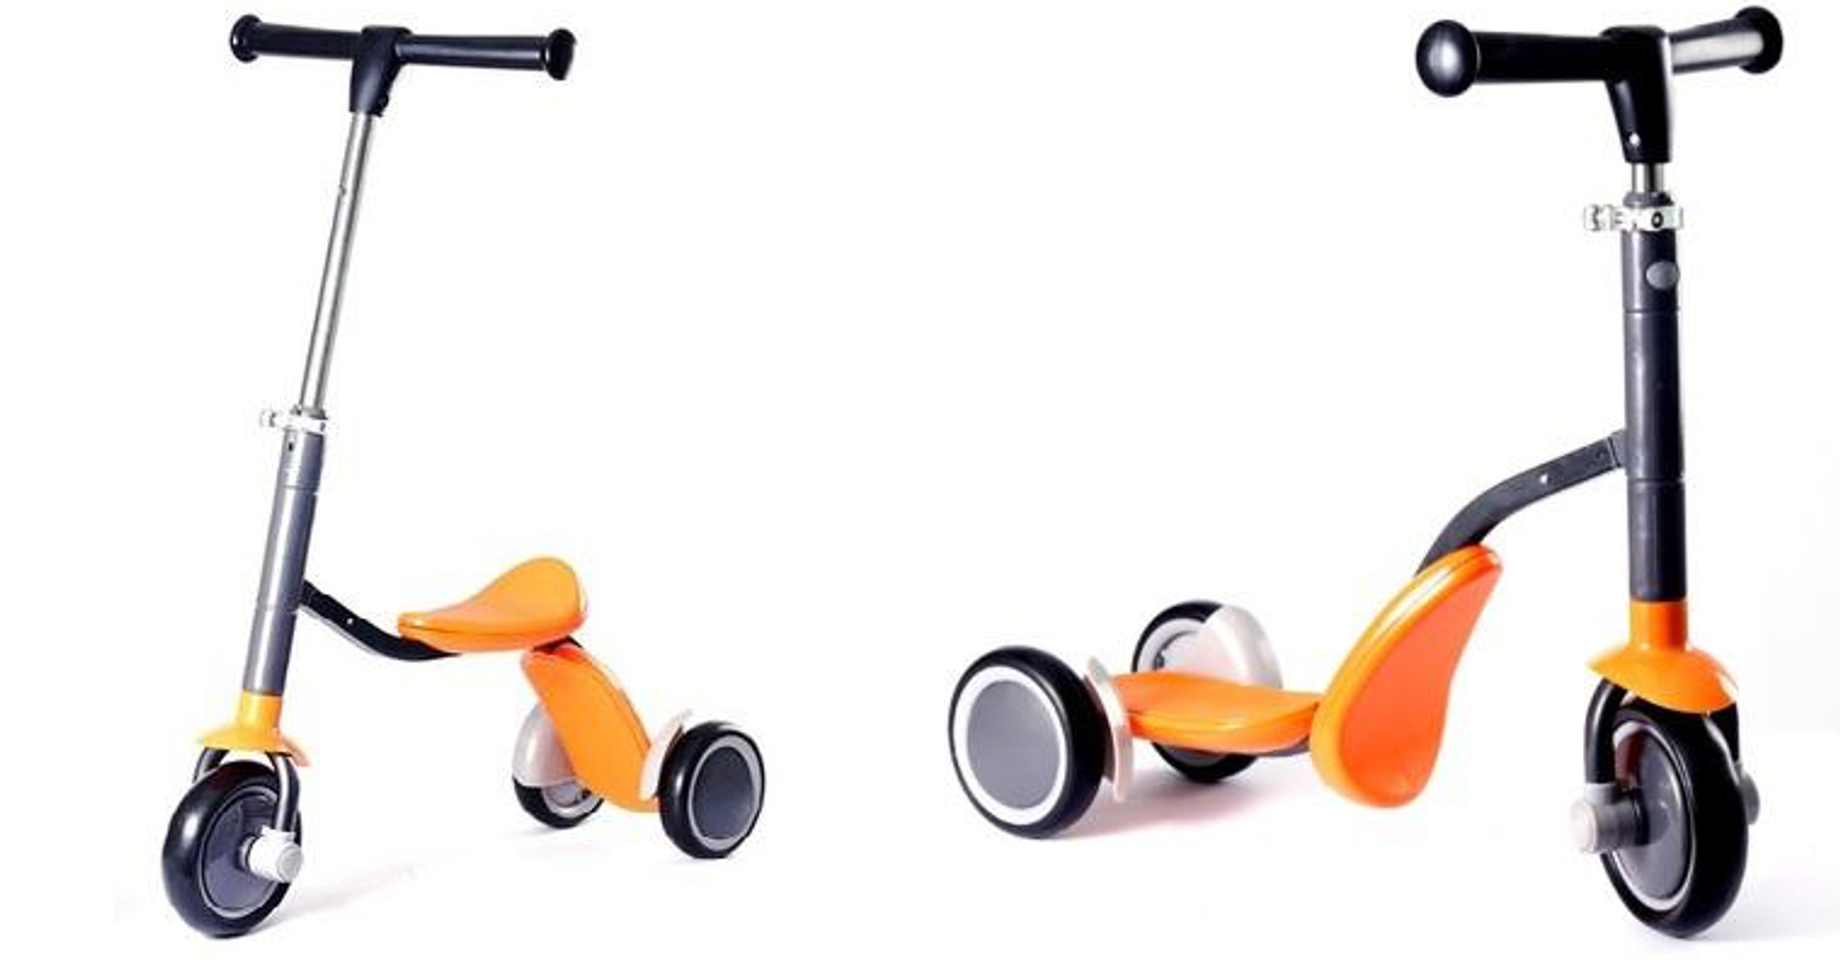 Xe trượt Scooter Nutifood là dòng xe trượt đa năng có thể lắp ráp thành xe chòi chân và xe trượt